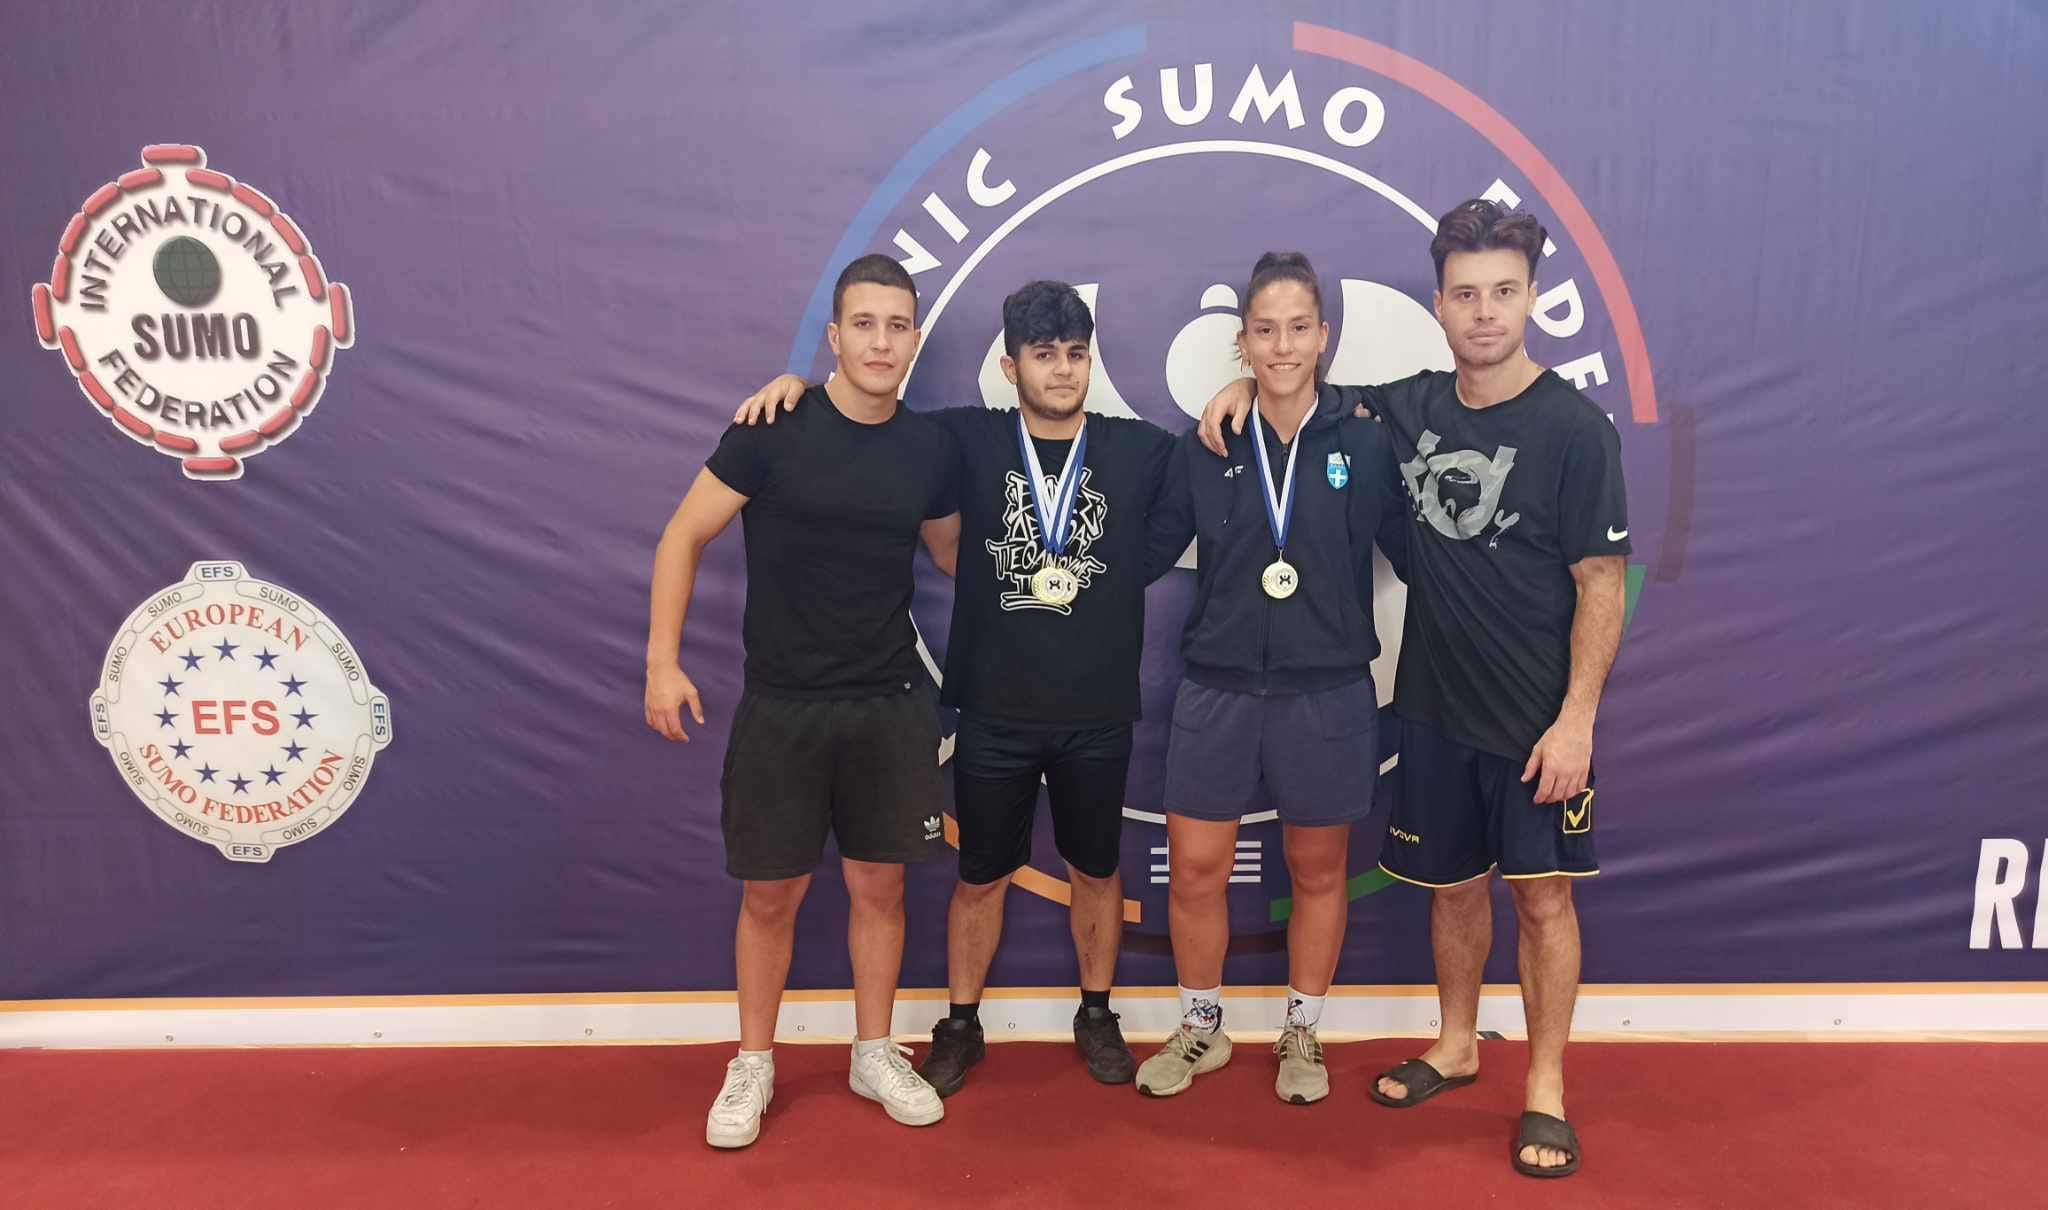 Πάλη: «Χρυσοί» Νικολάου και Βούλγαρη στο πανελλήνιο πρωτάθλημα SUMΟ (pics)